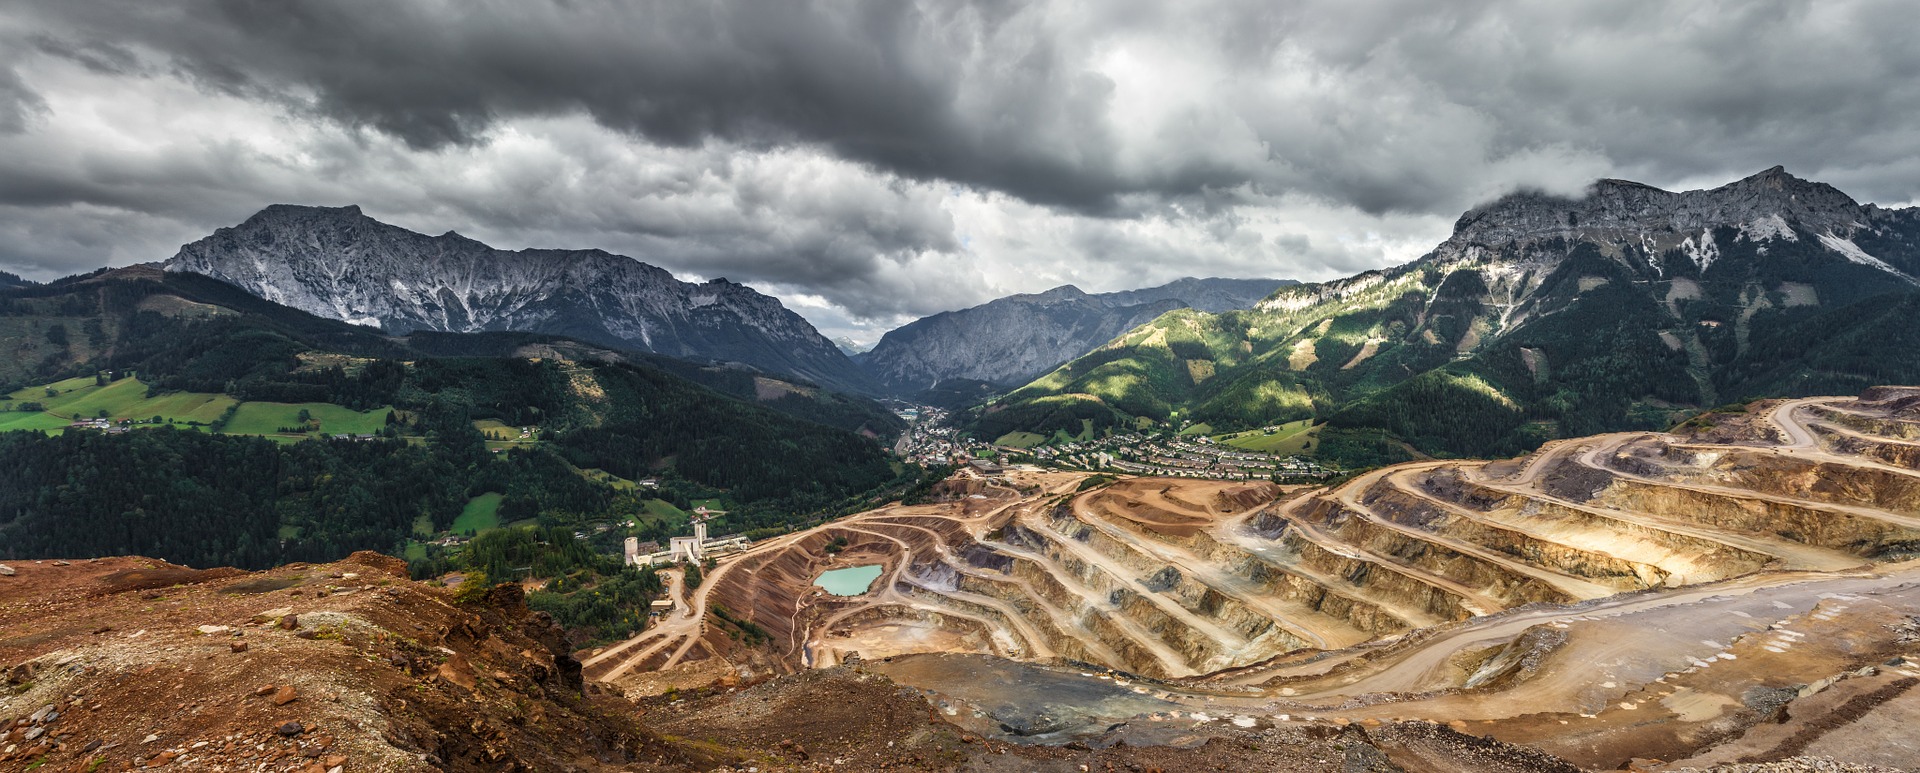 Une mine à ciel ouvert peut avoir un impact visuel considérable sur un paysage.